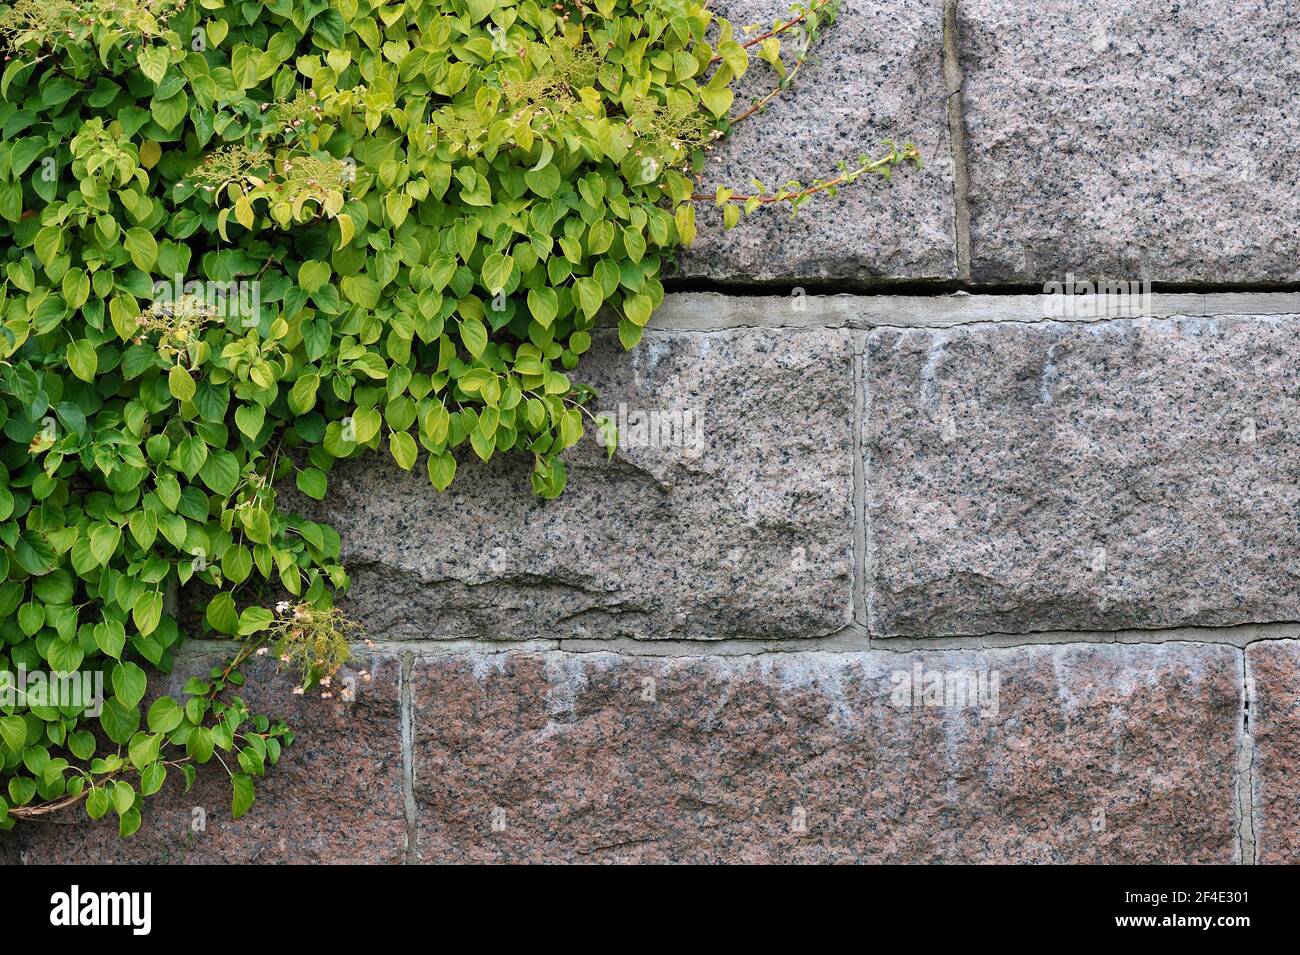 Hortensien klettern auf einer Steinwand Stockfoto